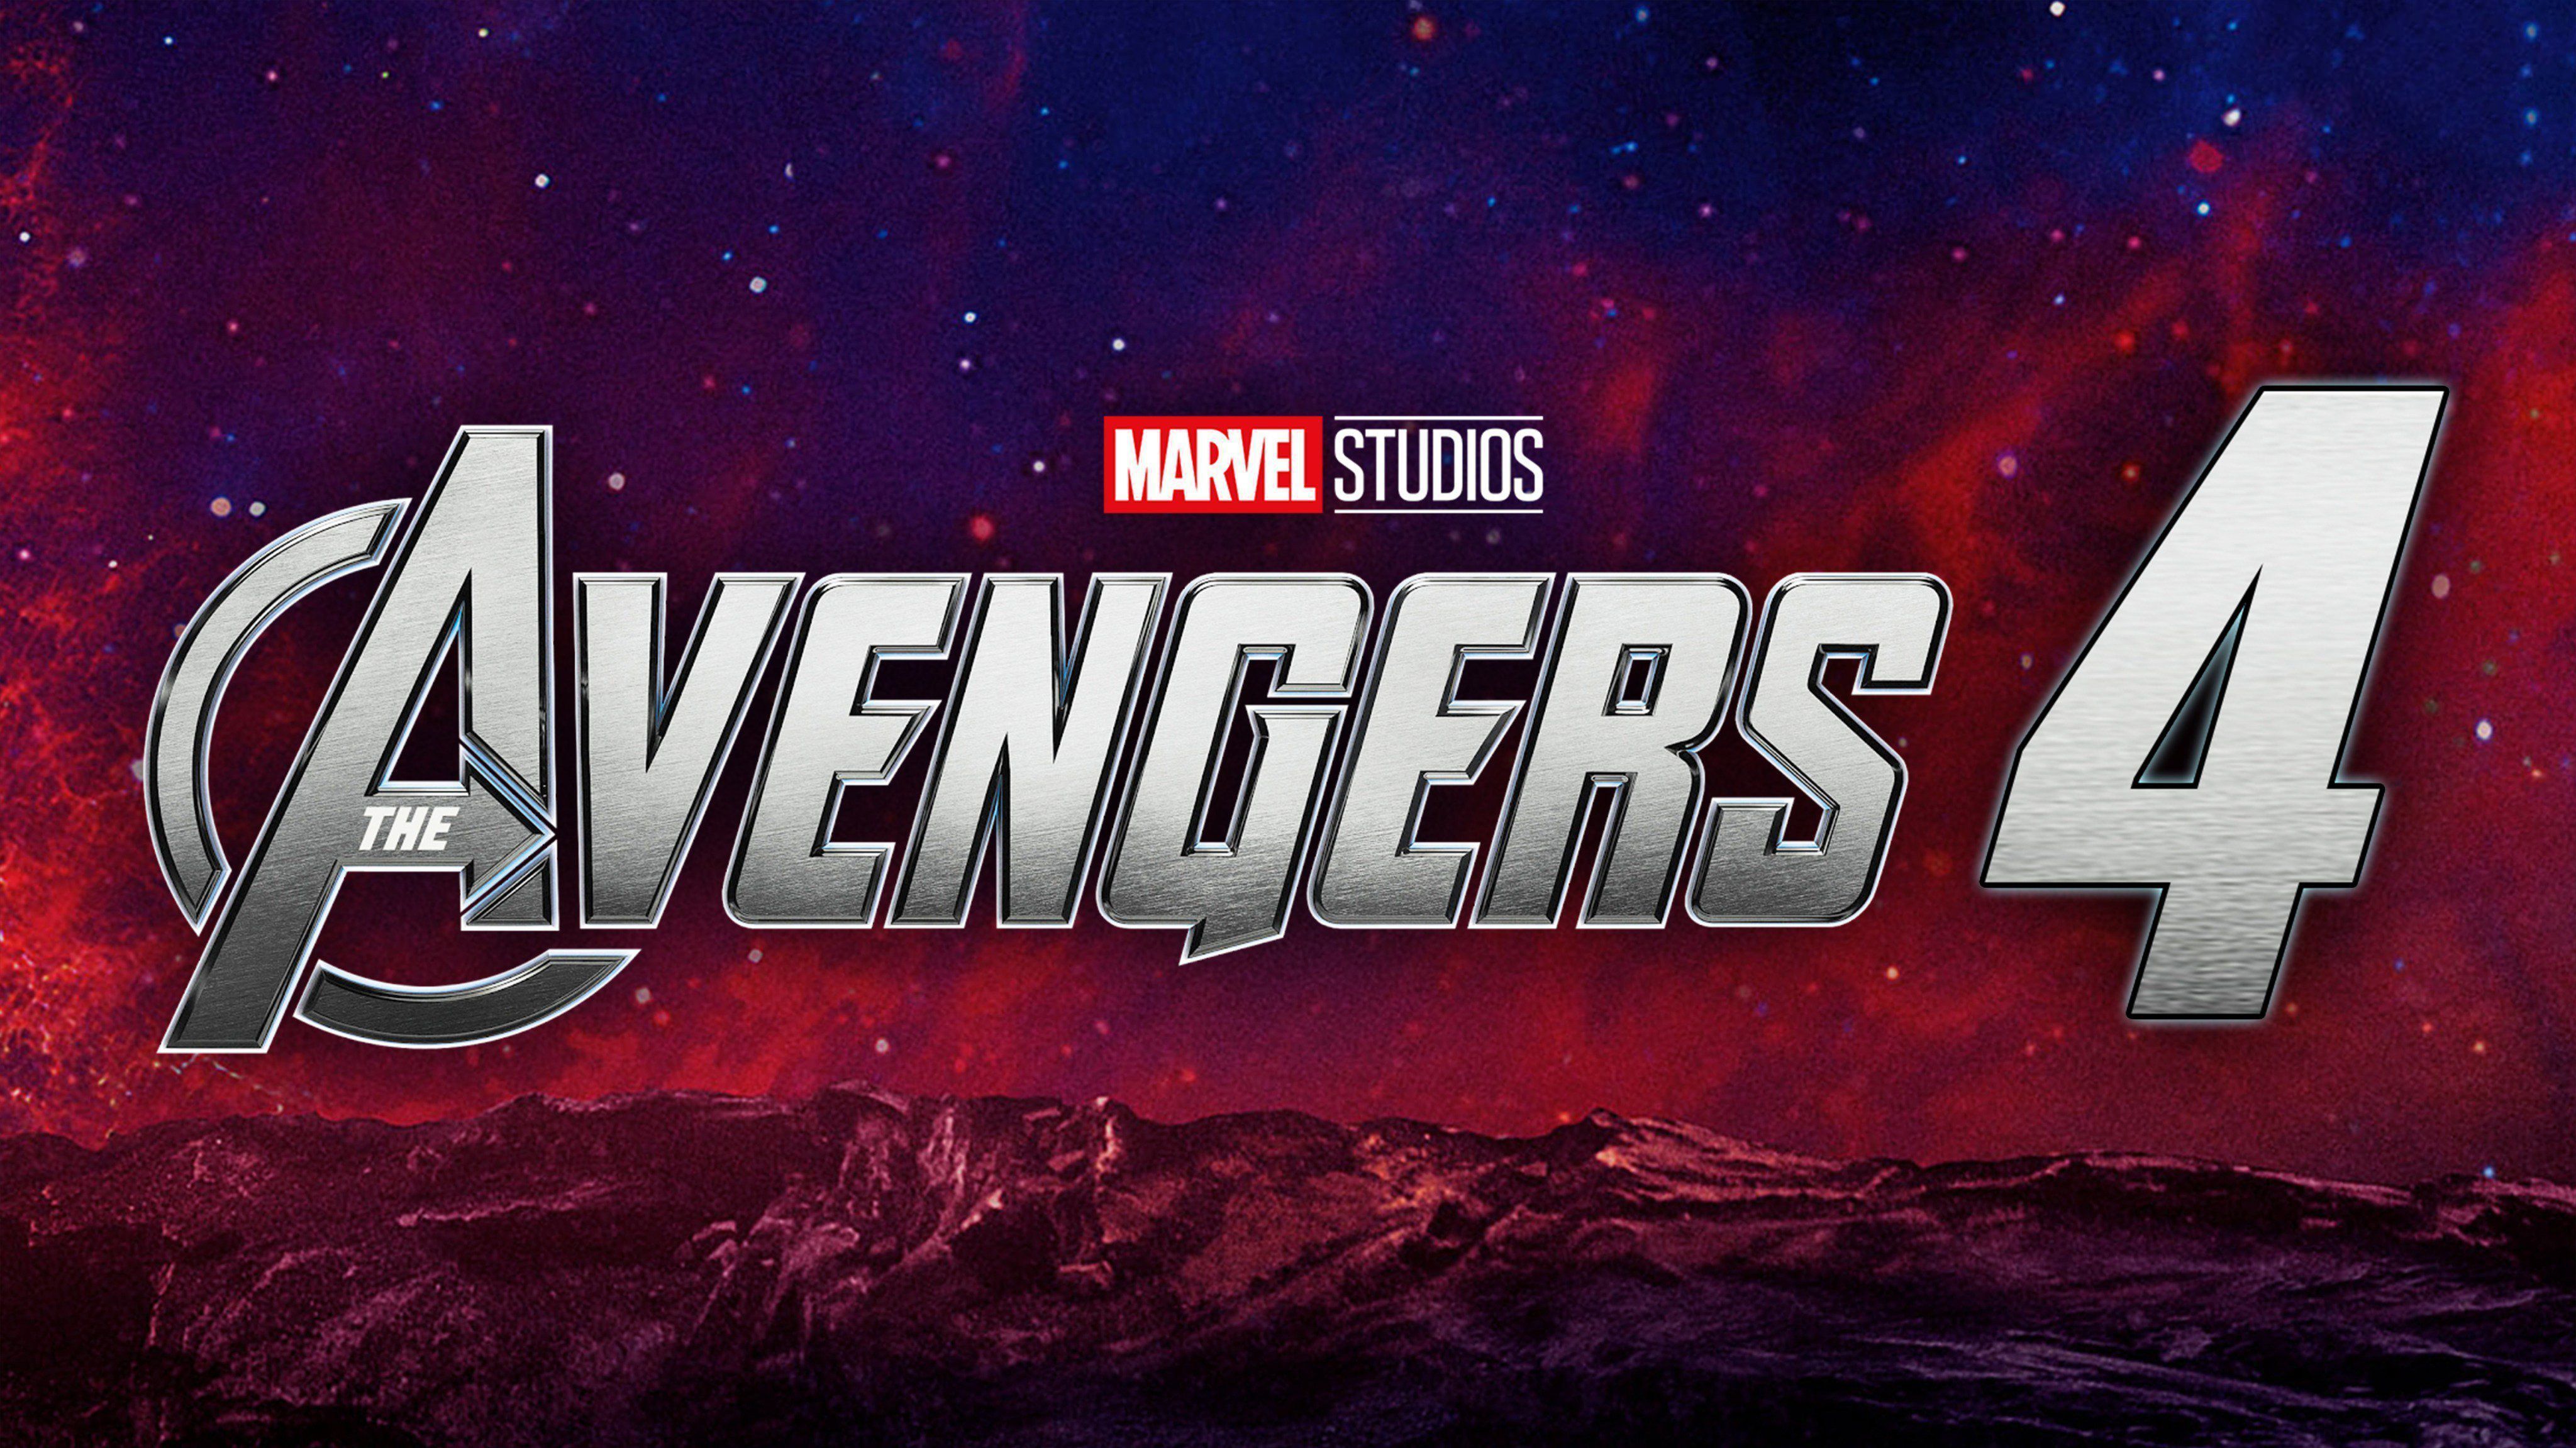 4k Marvel Studios Avengers Endgame Wallpaper iPhone, Android and Desktop!